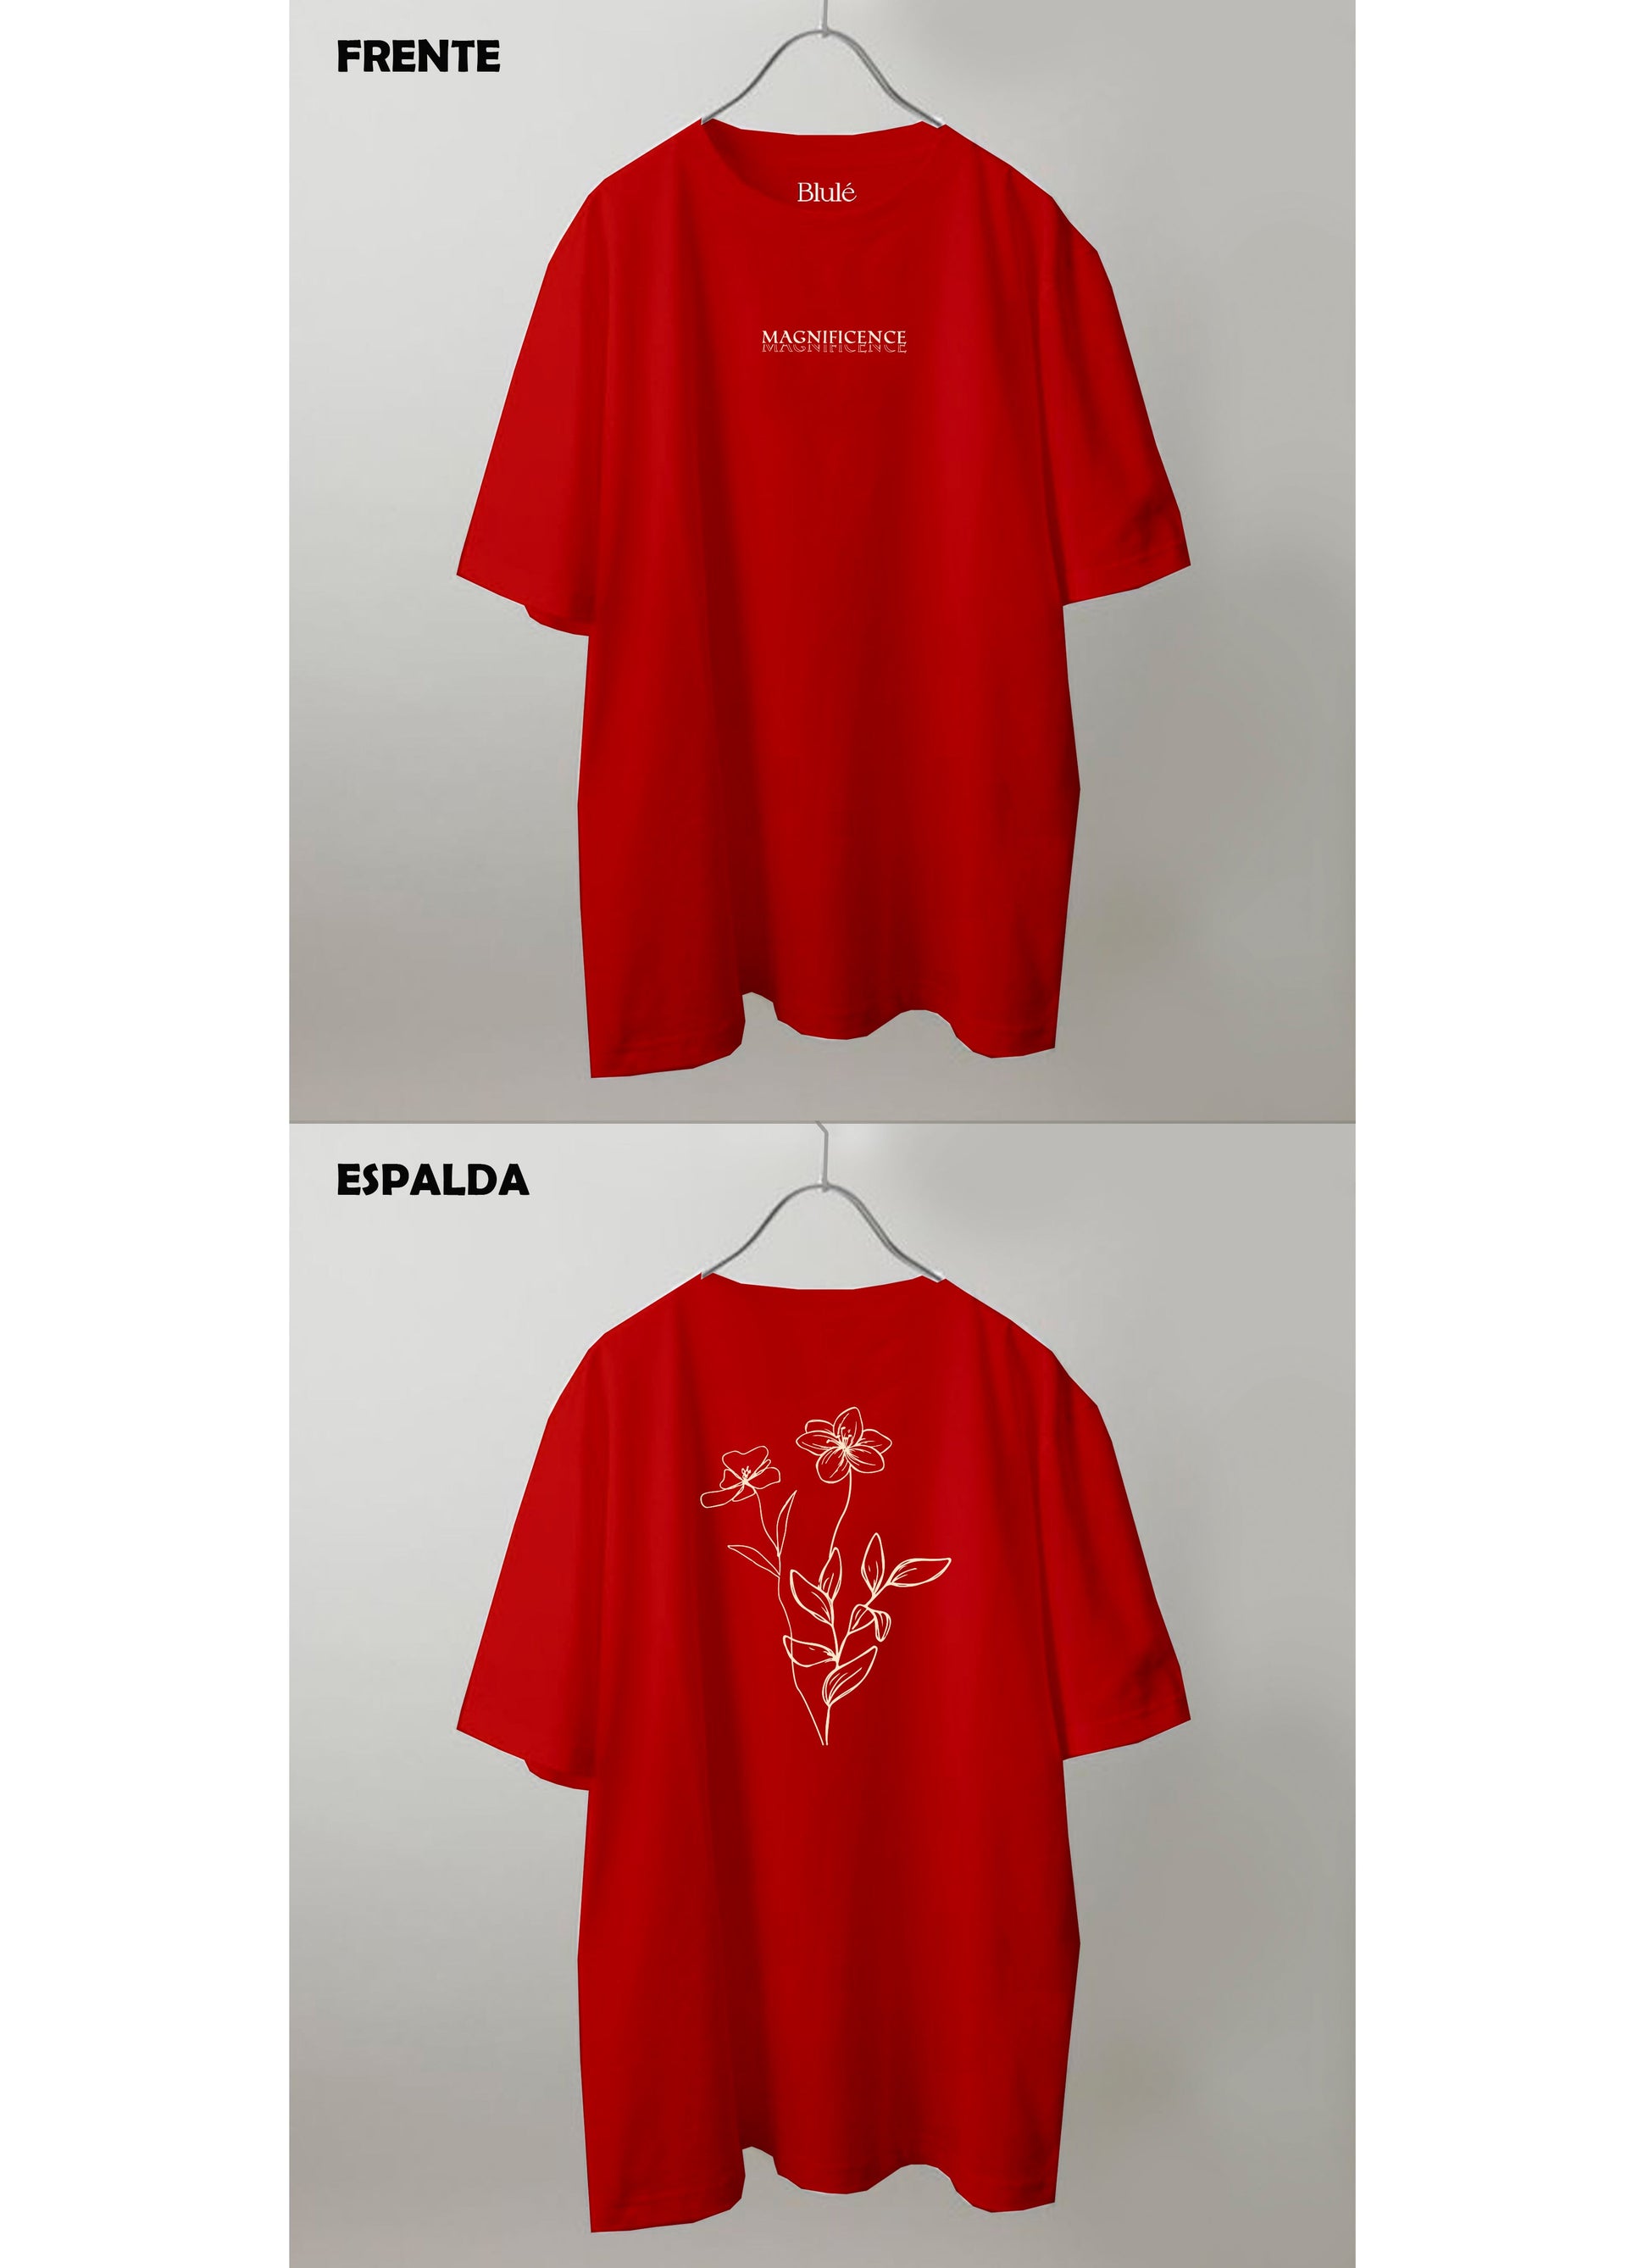 Imagen Camiseta Oversized Premium Unisex Magnificence Rojo Malboro